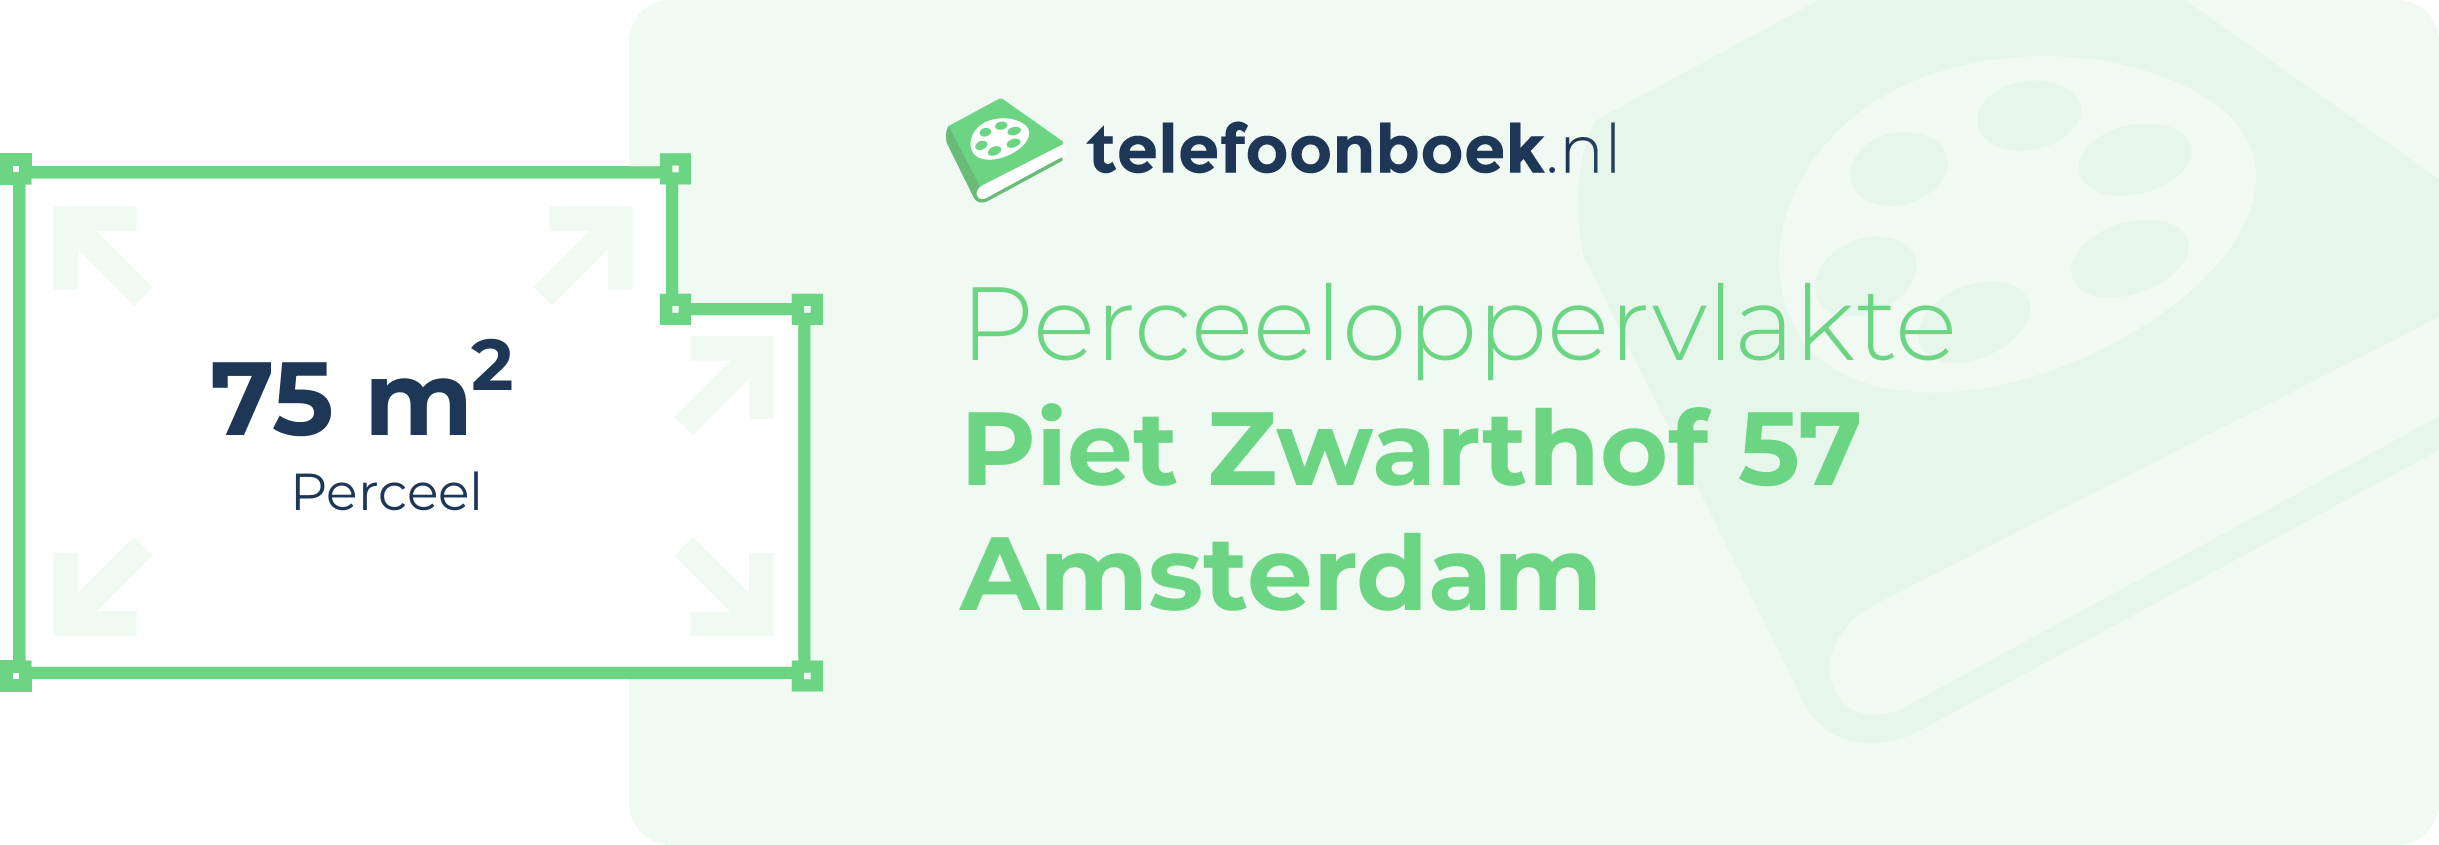 Perceeloppervlakte Piet Zwarthof 57 Amsterdam